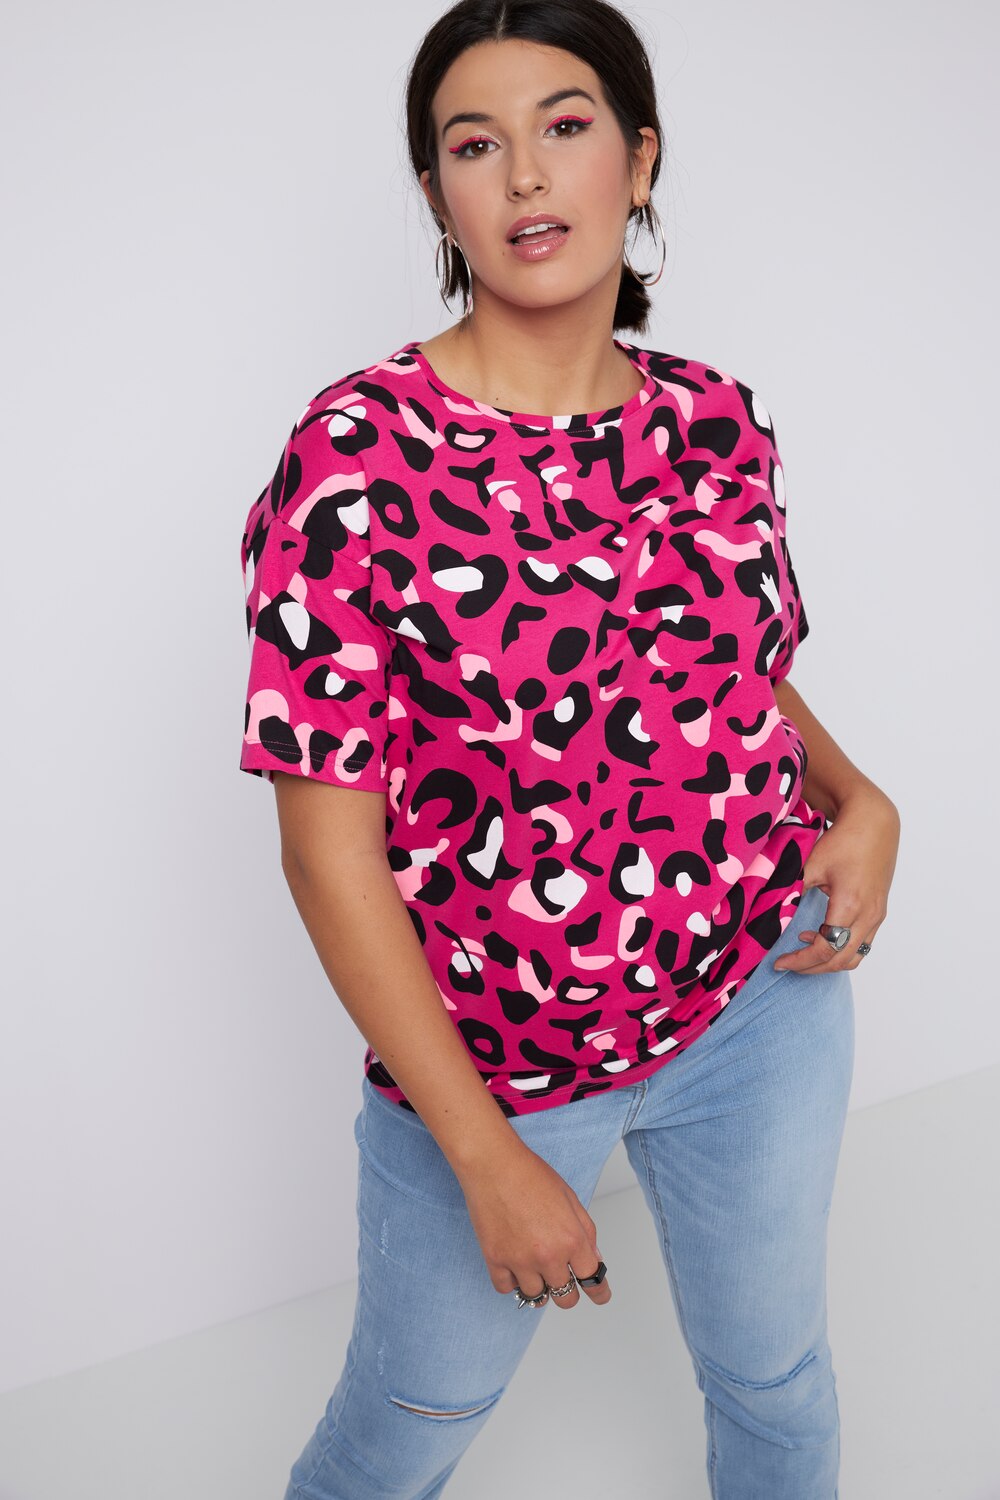 Grote Maten T-shirt, Dames, roze, Maat: 42/44, Katoen, Studio Untold